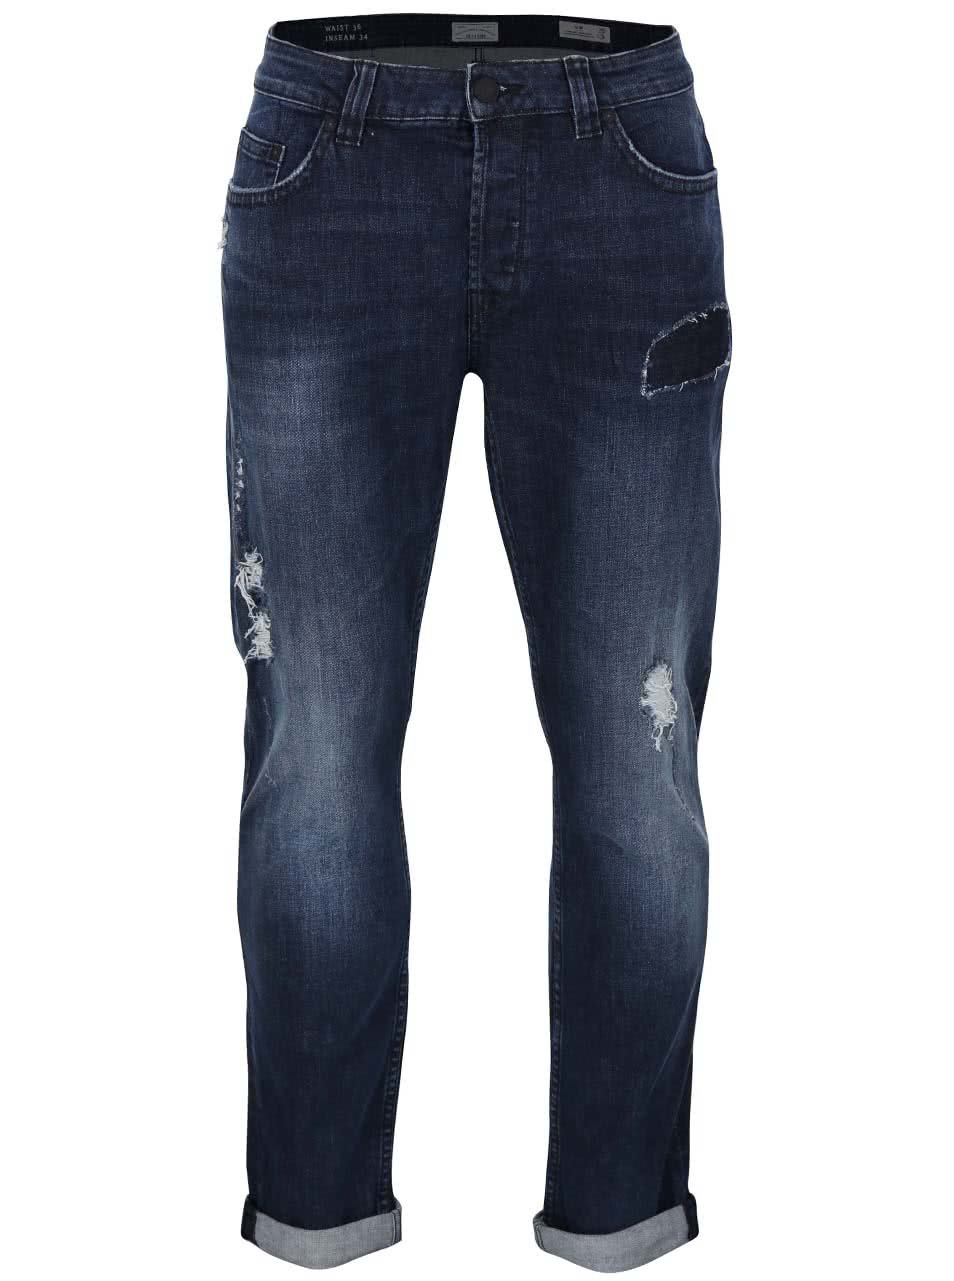 Tmavě modré džíny s potrhaným efektem ONLY & SONS Loom